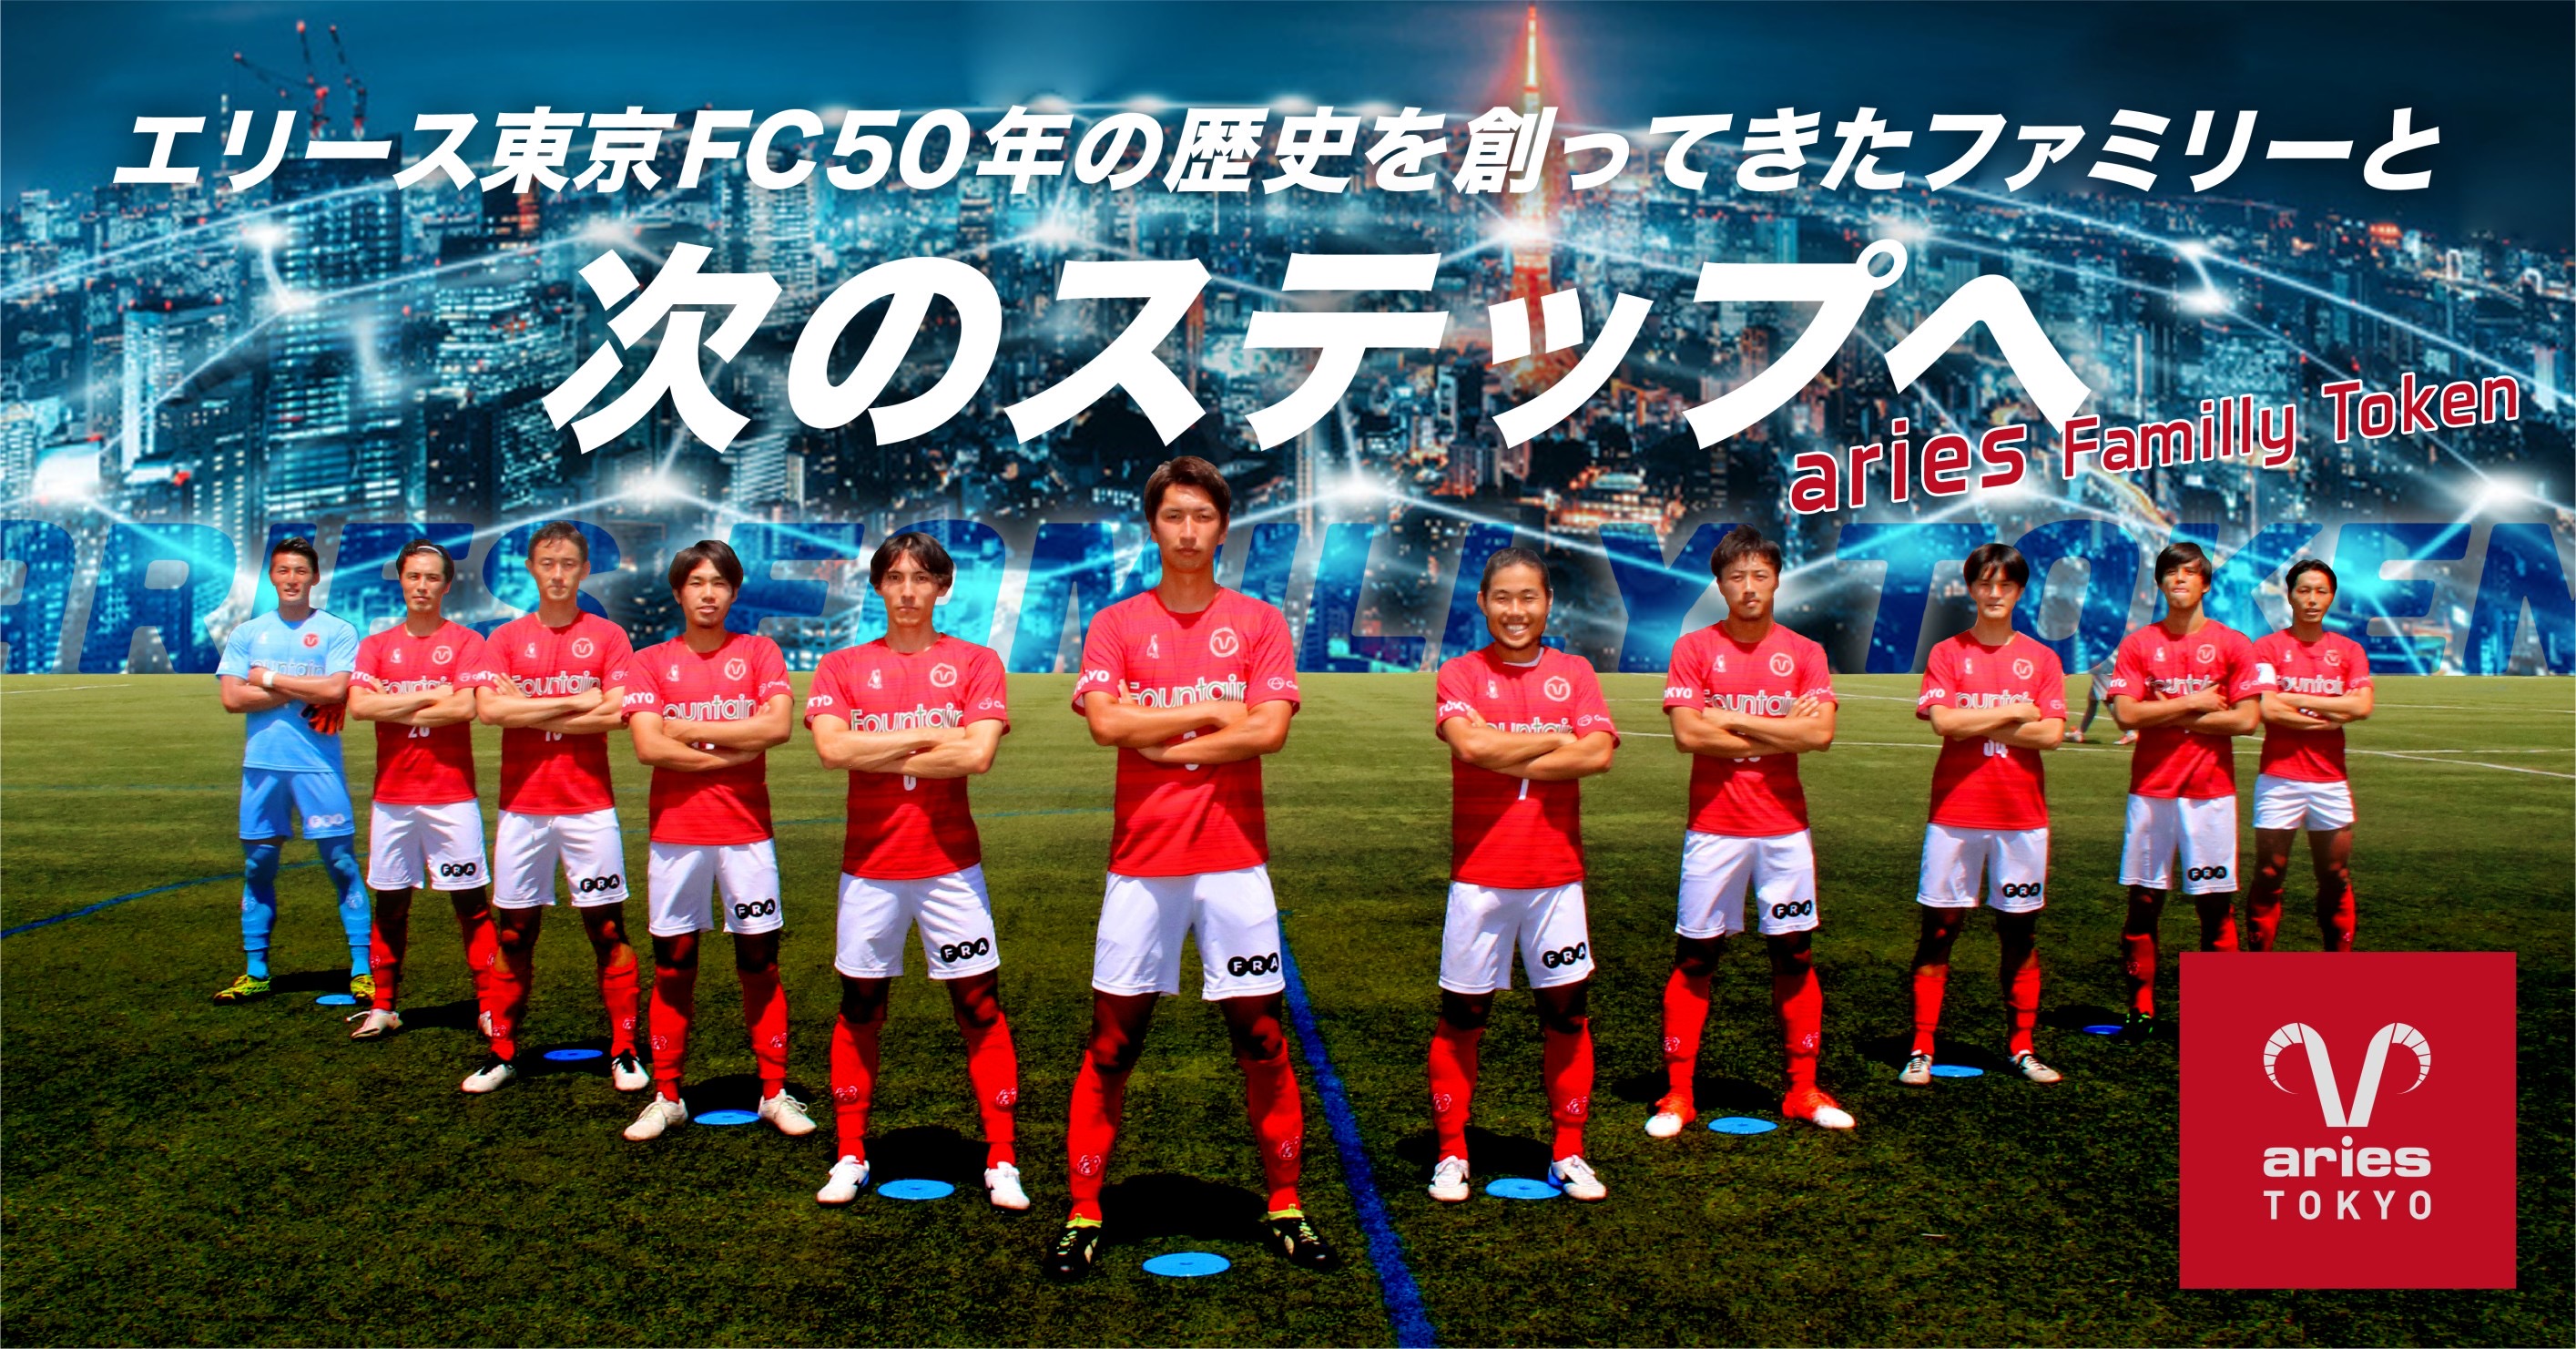 関東サッカーリーグ2部に所属するサッカークラブ エリース東京fc がトークンを新規発行 販売開始 株式会社フィナンシェのプレスリリース